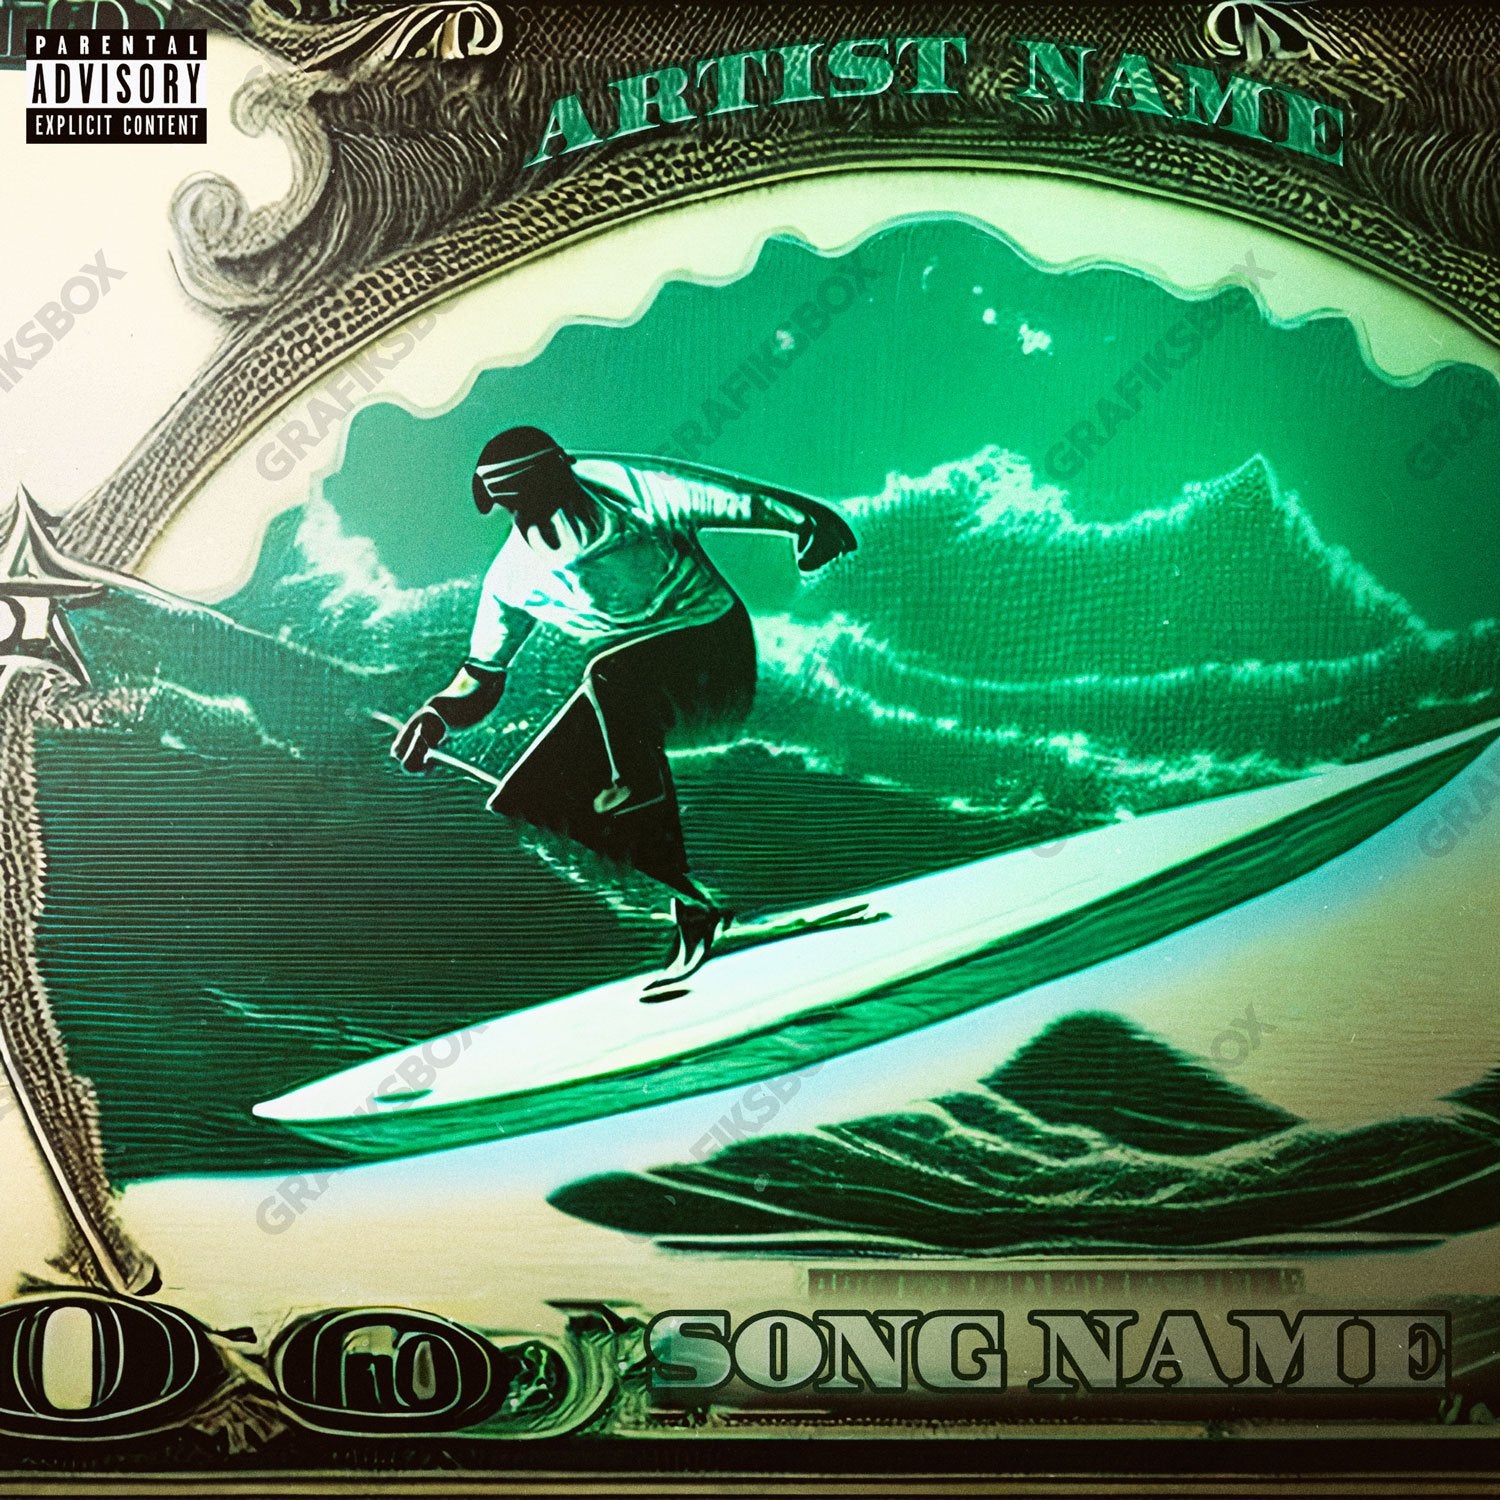 Money Surfer premade cover art